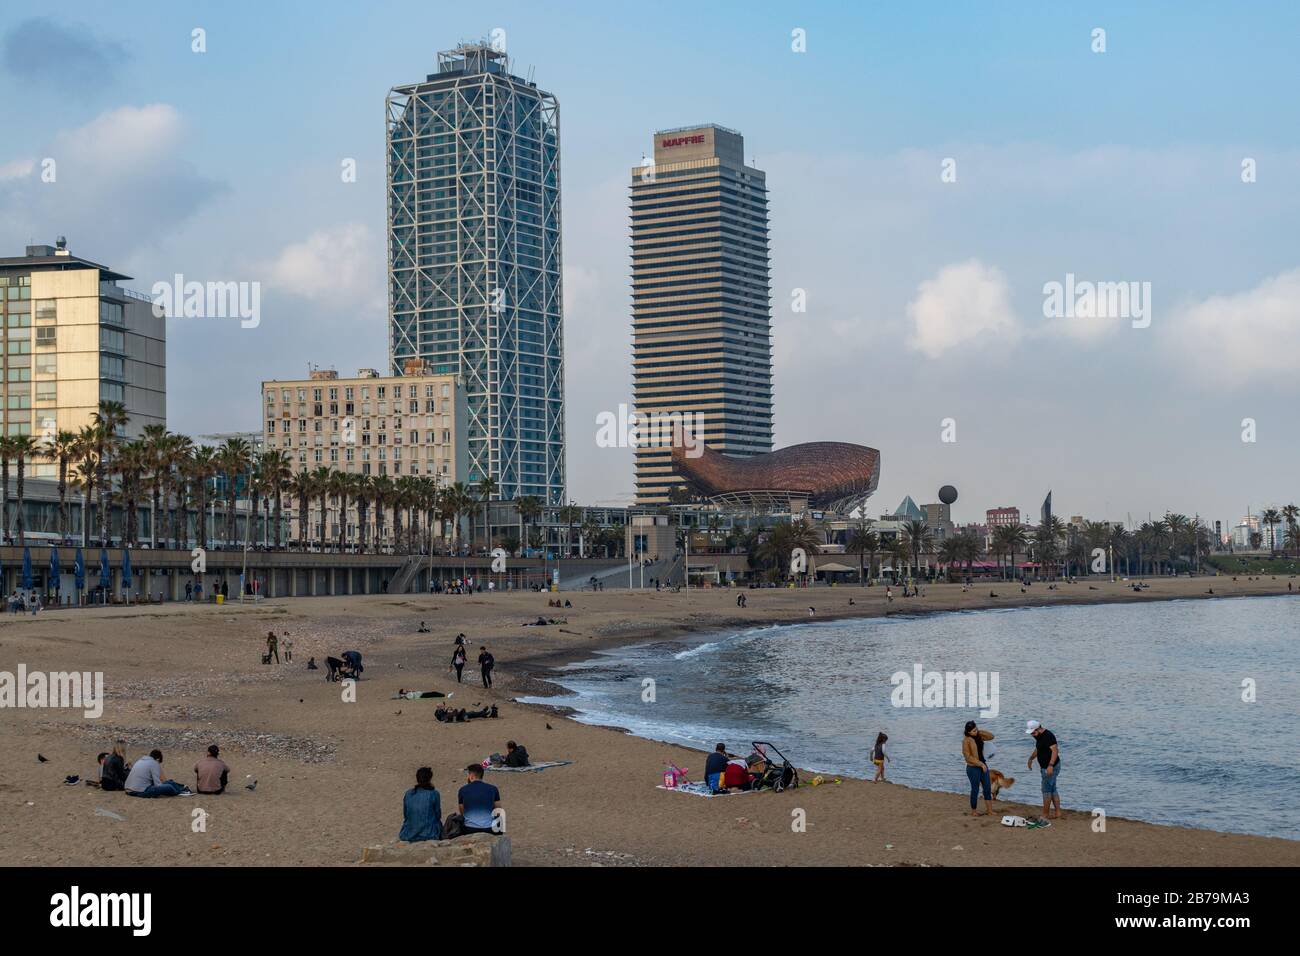 Barcelone, Espagne. 14 mars 2020. Foule assise sur le bord de mer de Barcelone, samedi après-midi nuageux malgré le gouvernement espagnol déclaré alerte St Banque D'Images